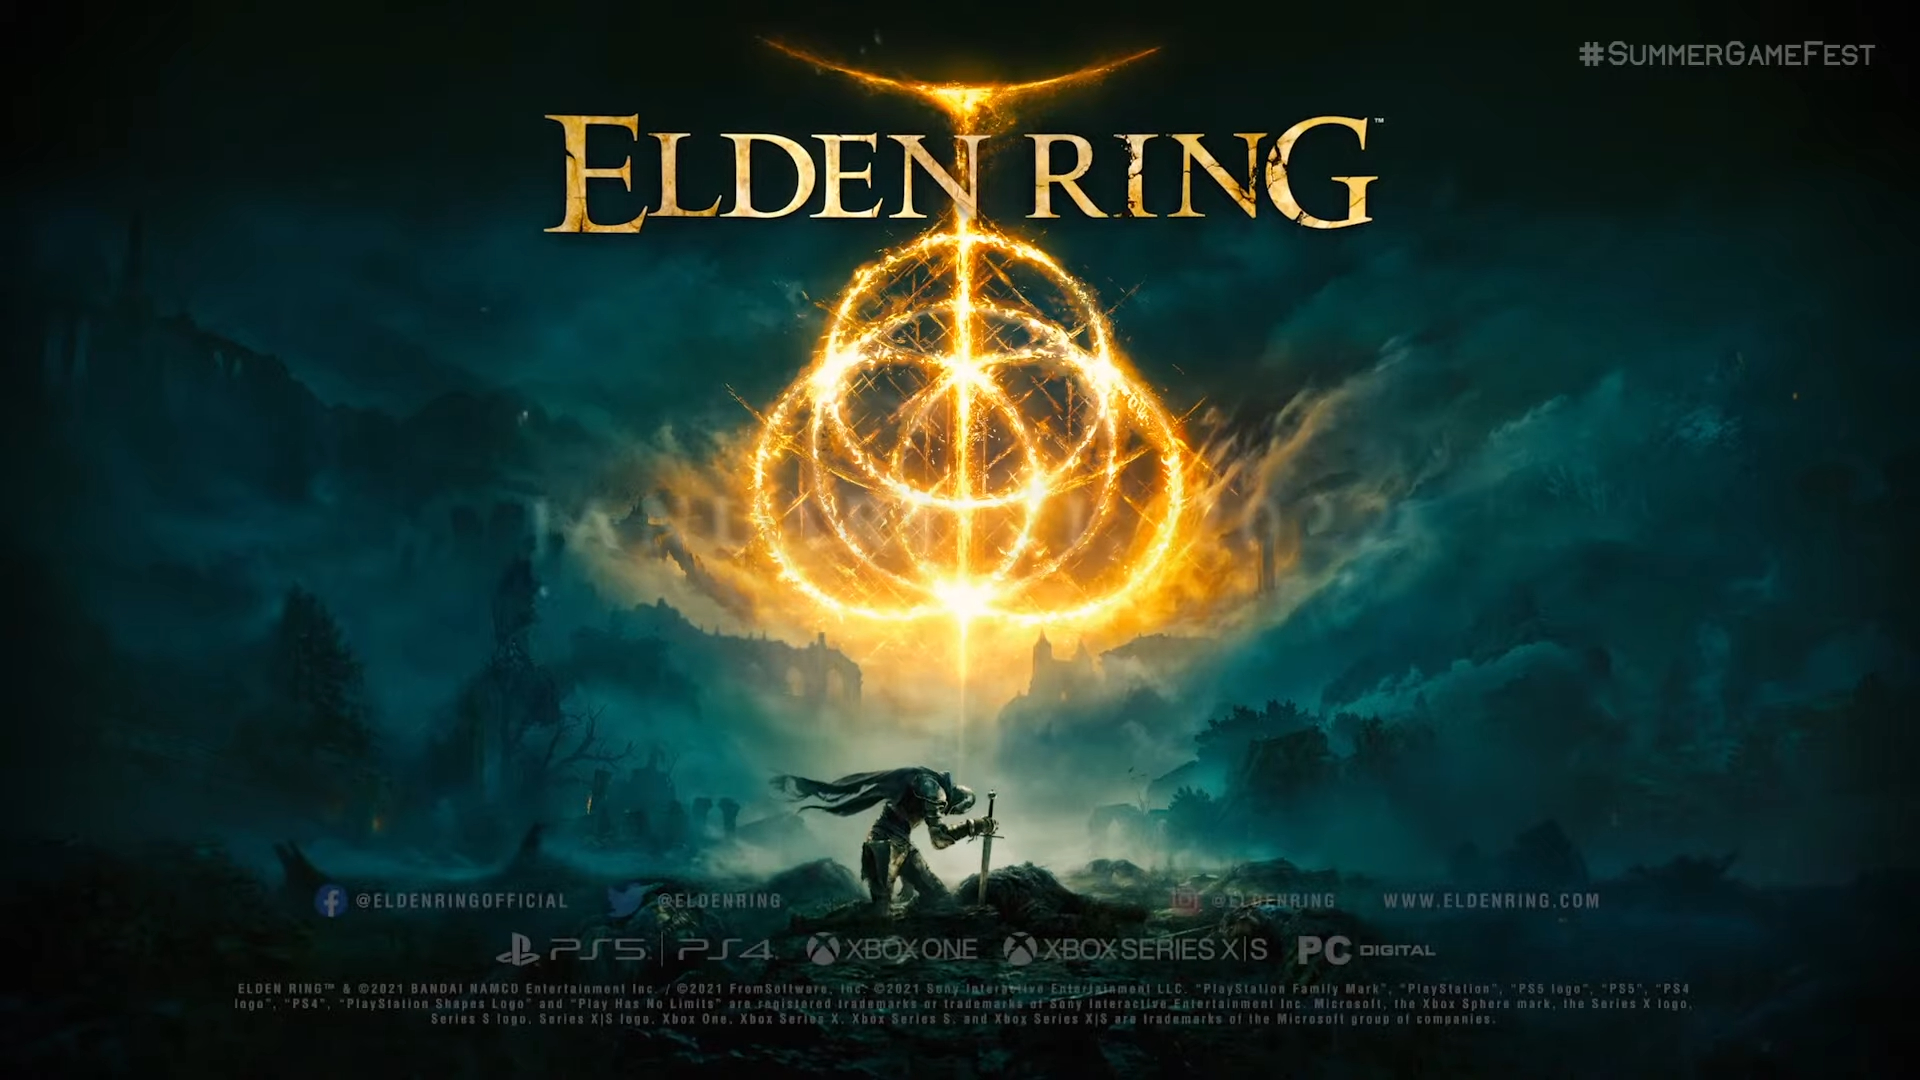 Elden ring review - lopisphere